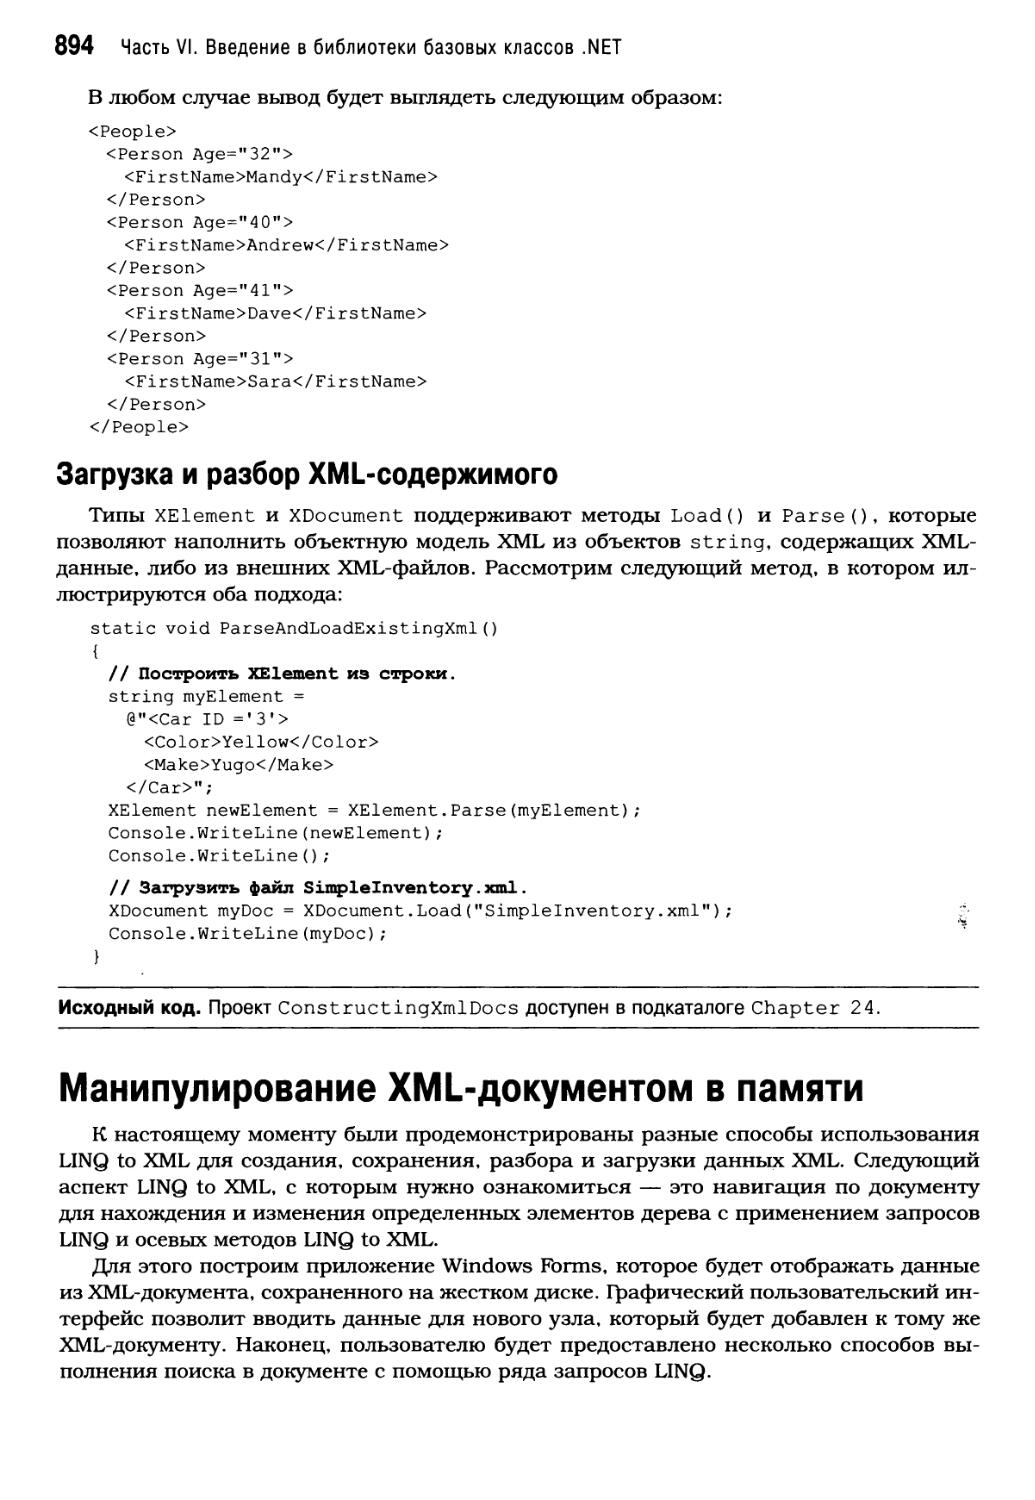 Загрузка и разбор XML-содержимого
Манипулирование XML-документом в памяти